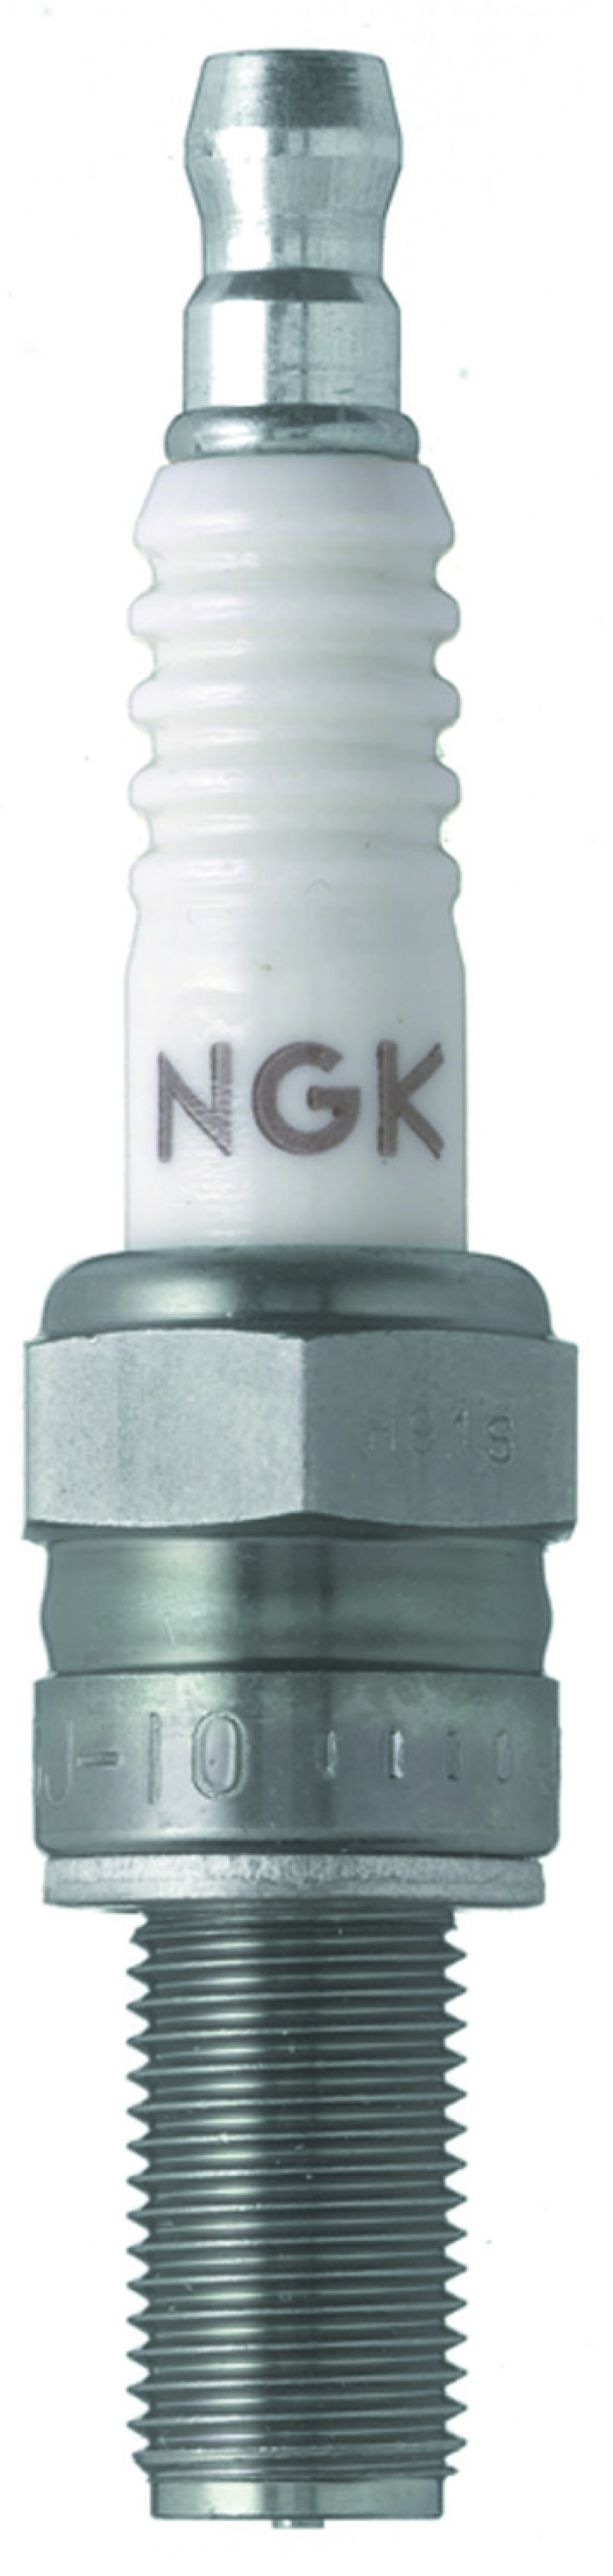 NGK Racing Spark Plug Box of 4 (R0045Q-9) - 3235